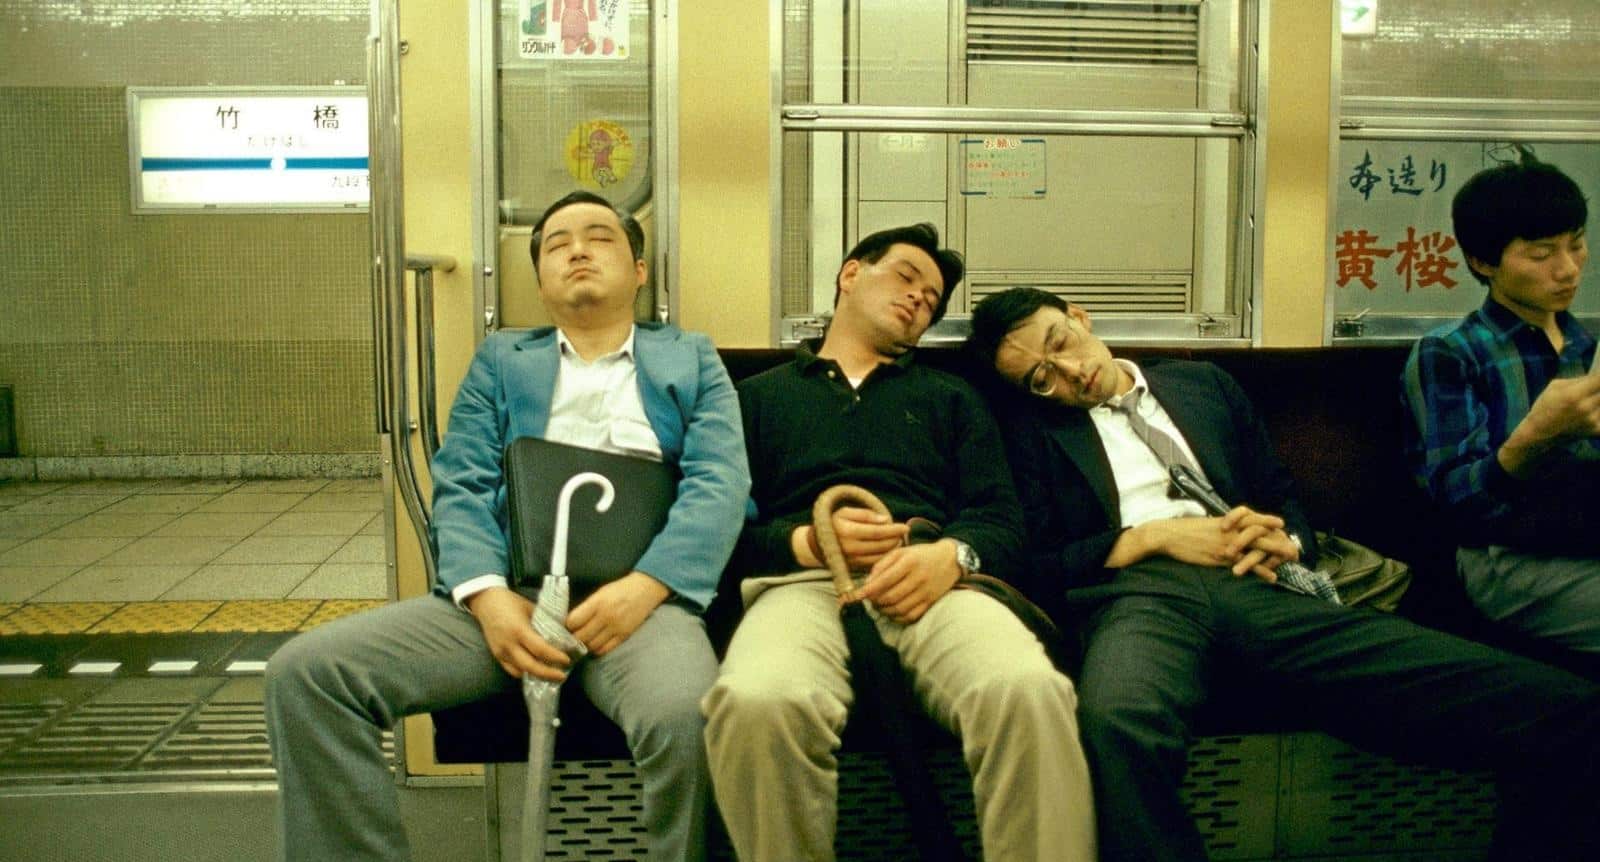 คาโรชิไลน์ : คนญี่ปุ่นที่เหนื่อยจากการทำงาน